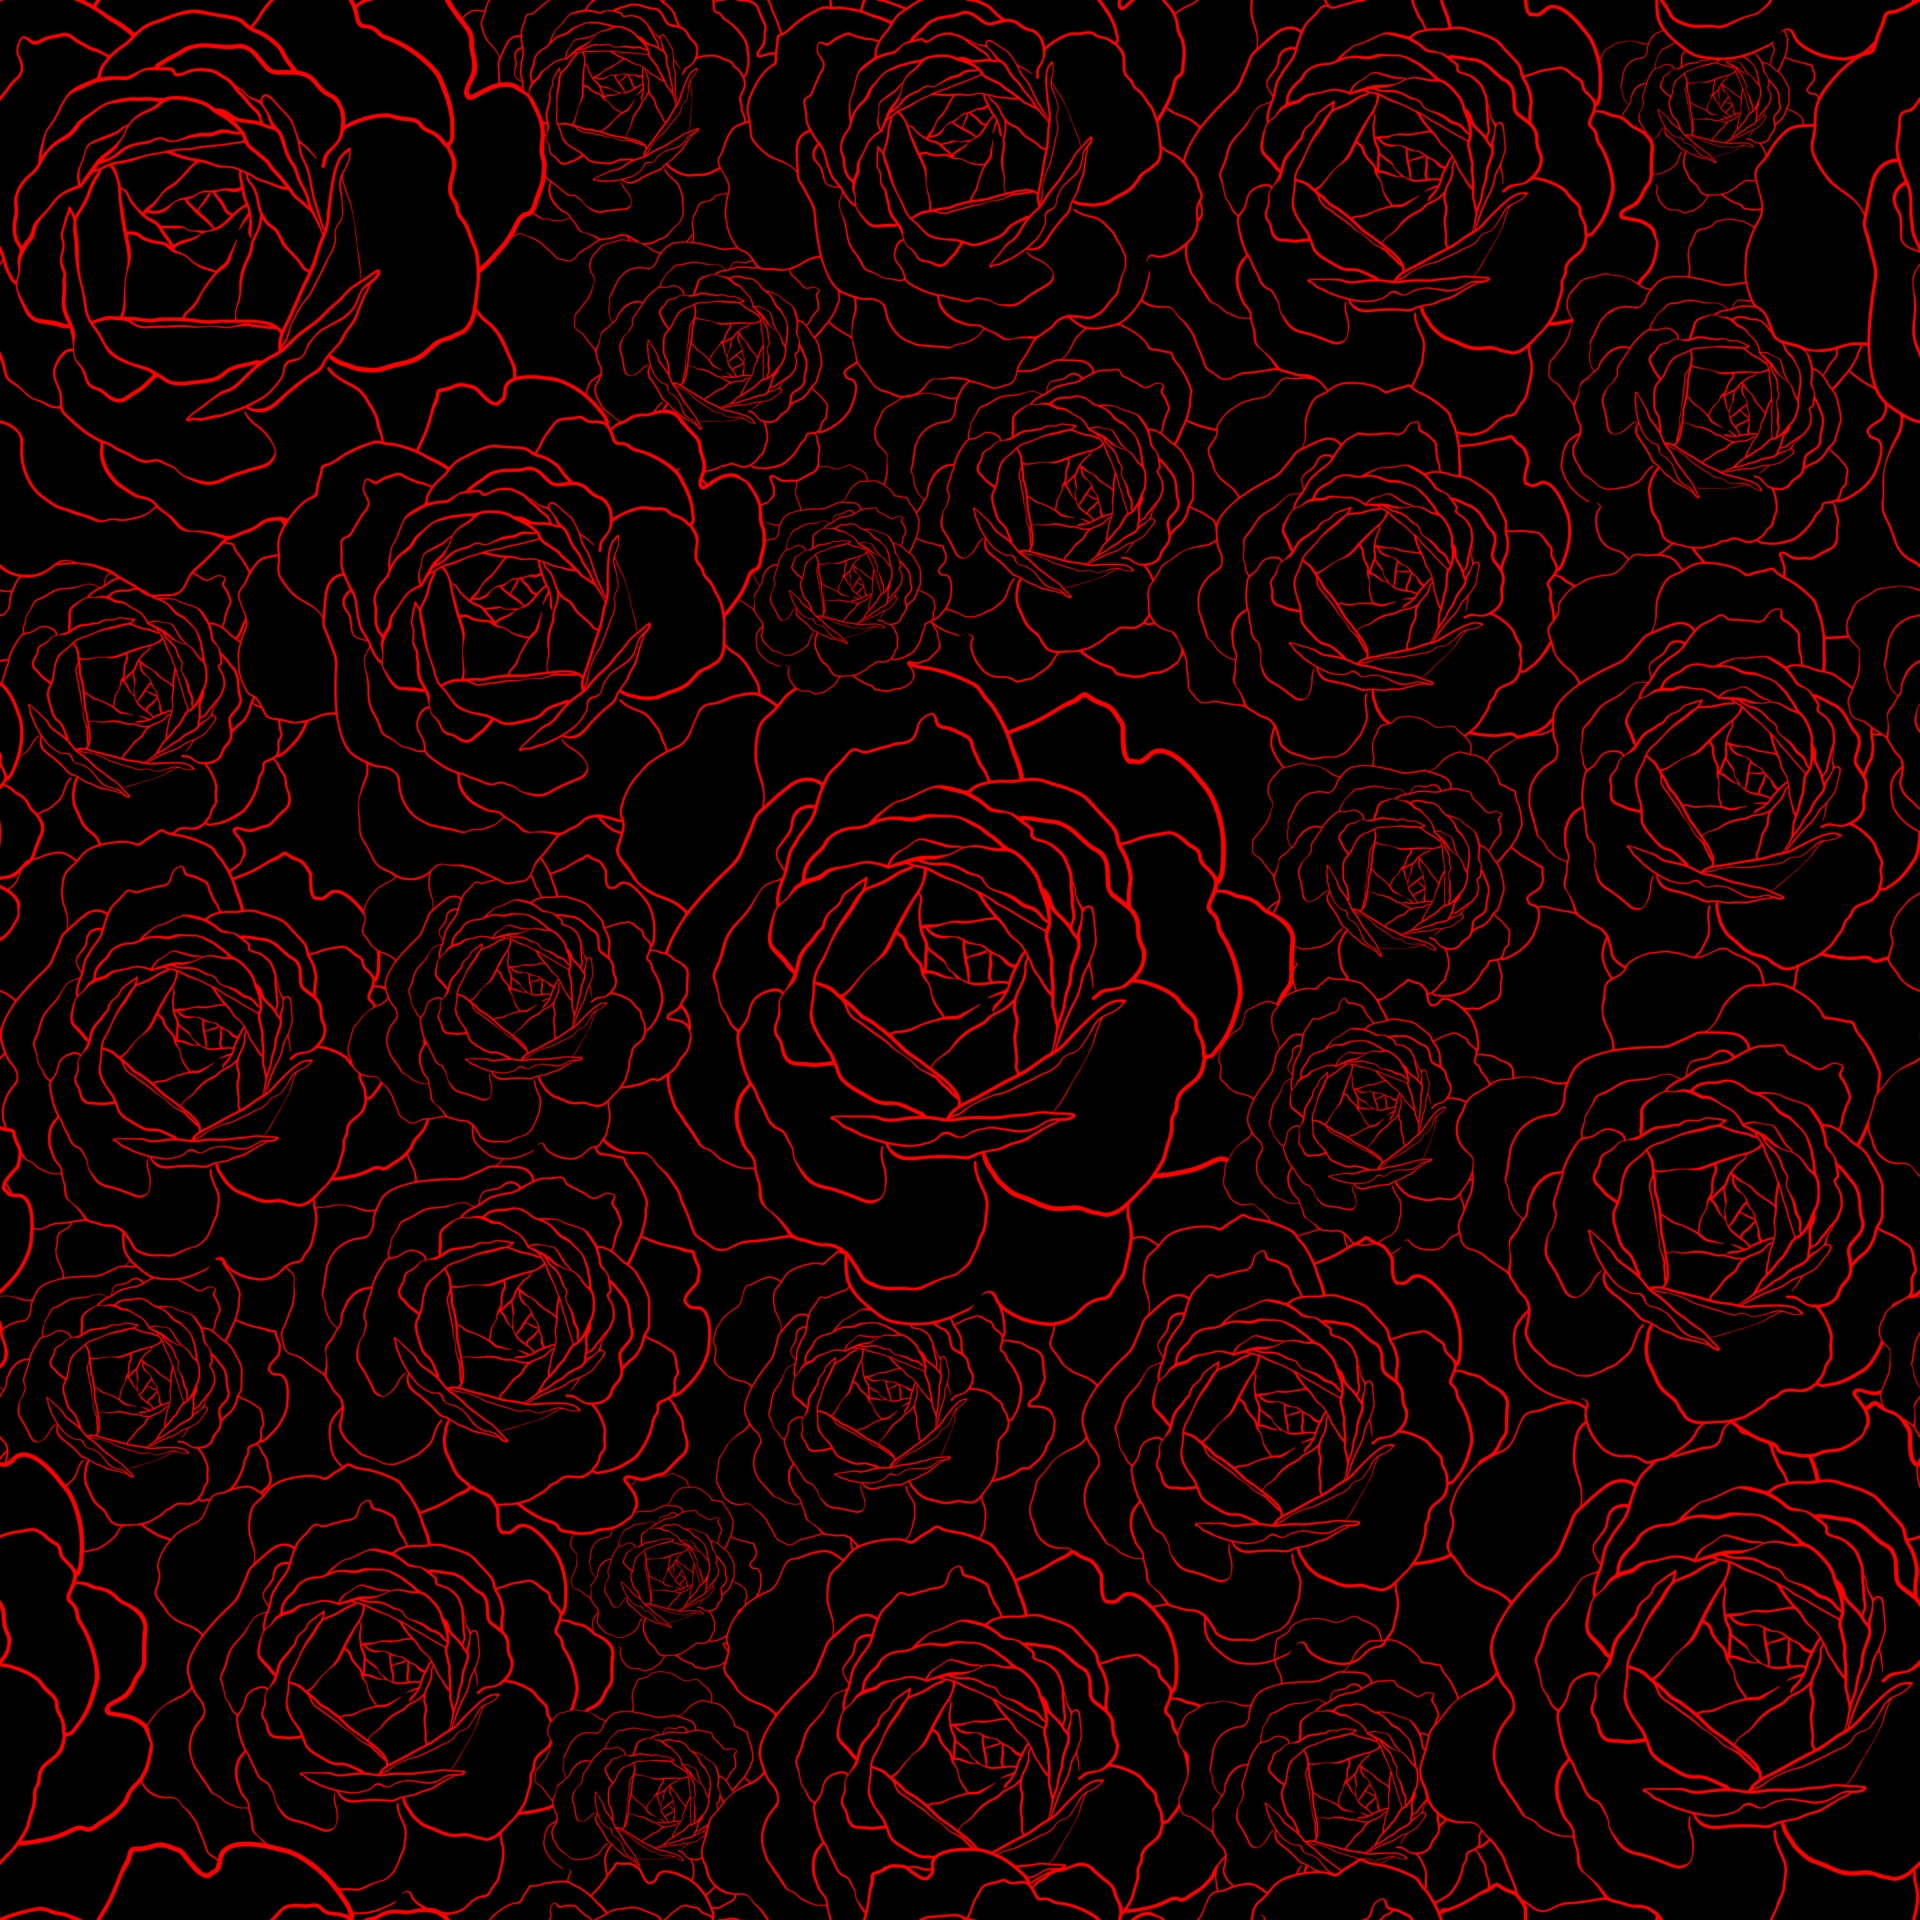 Bộ sưu tập hoa hồng đen đường kẻ mẫu liên tục đem đến một cách mới lạ để tôn lên vẻ đẹp quyến rũ của các loài hoa. Những hình ảnh này được thiết kế với đường kẻ mẫu liên tục tạo nên cảm giác tinh tế và sang trọng, sẽ khiến bạn không thể rời mắt khỏi những chiếc hoa hồng đen quyến rũ.